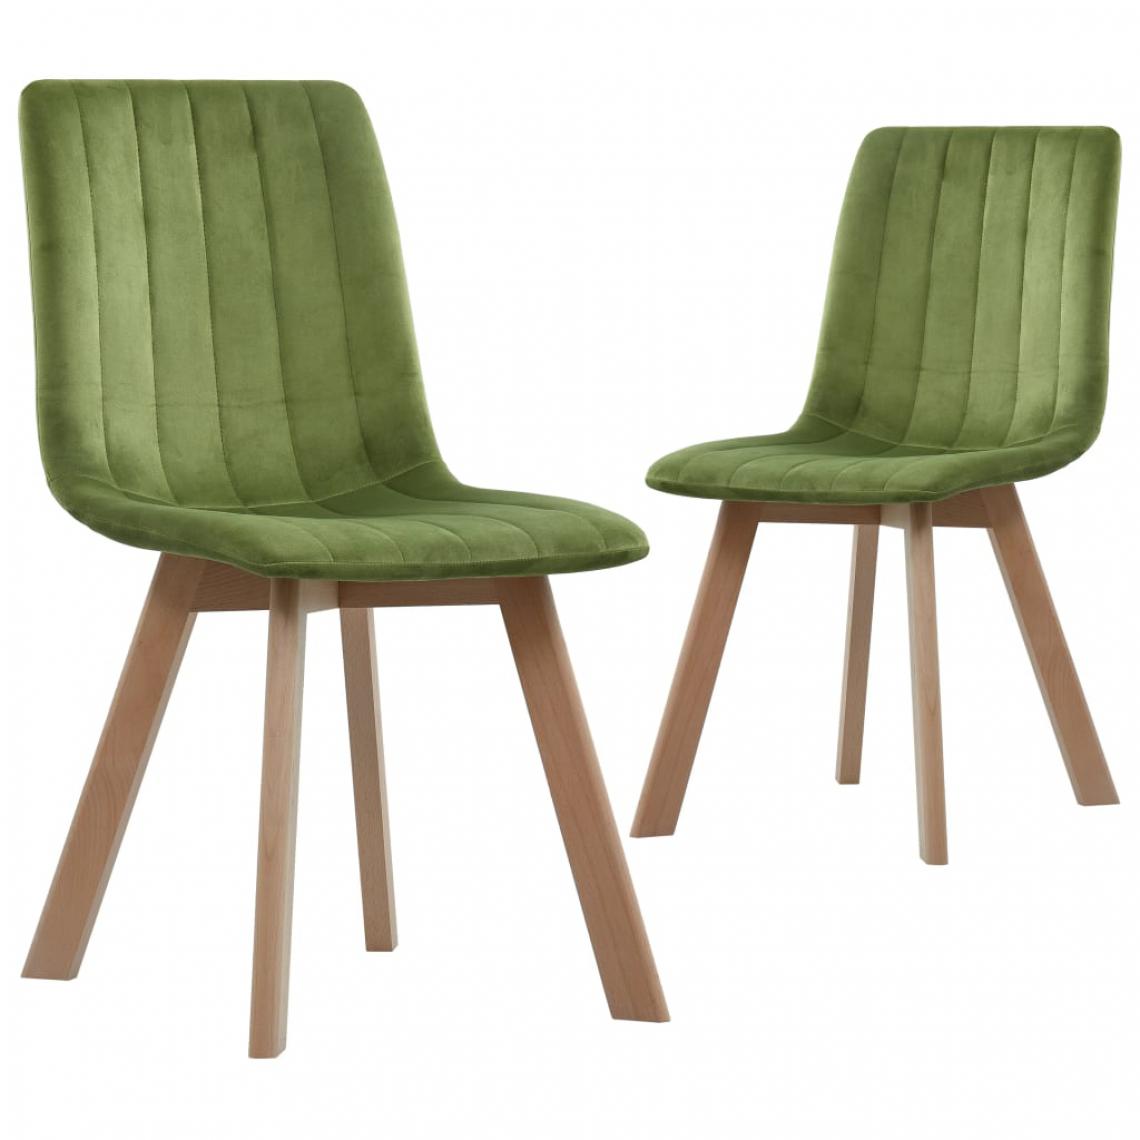 Icaverne - Contemporain Fauteuils et chaises serie Londres Chaises de salle à manger 2 pcs Vert Velours - Chaises